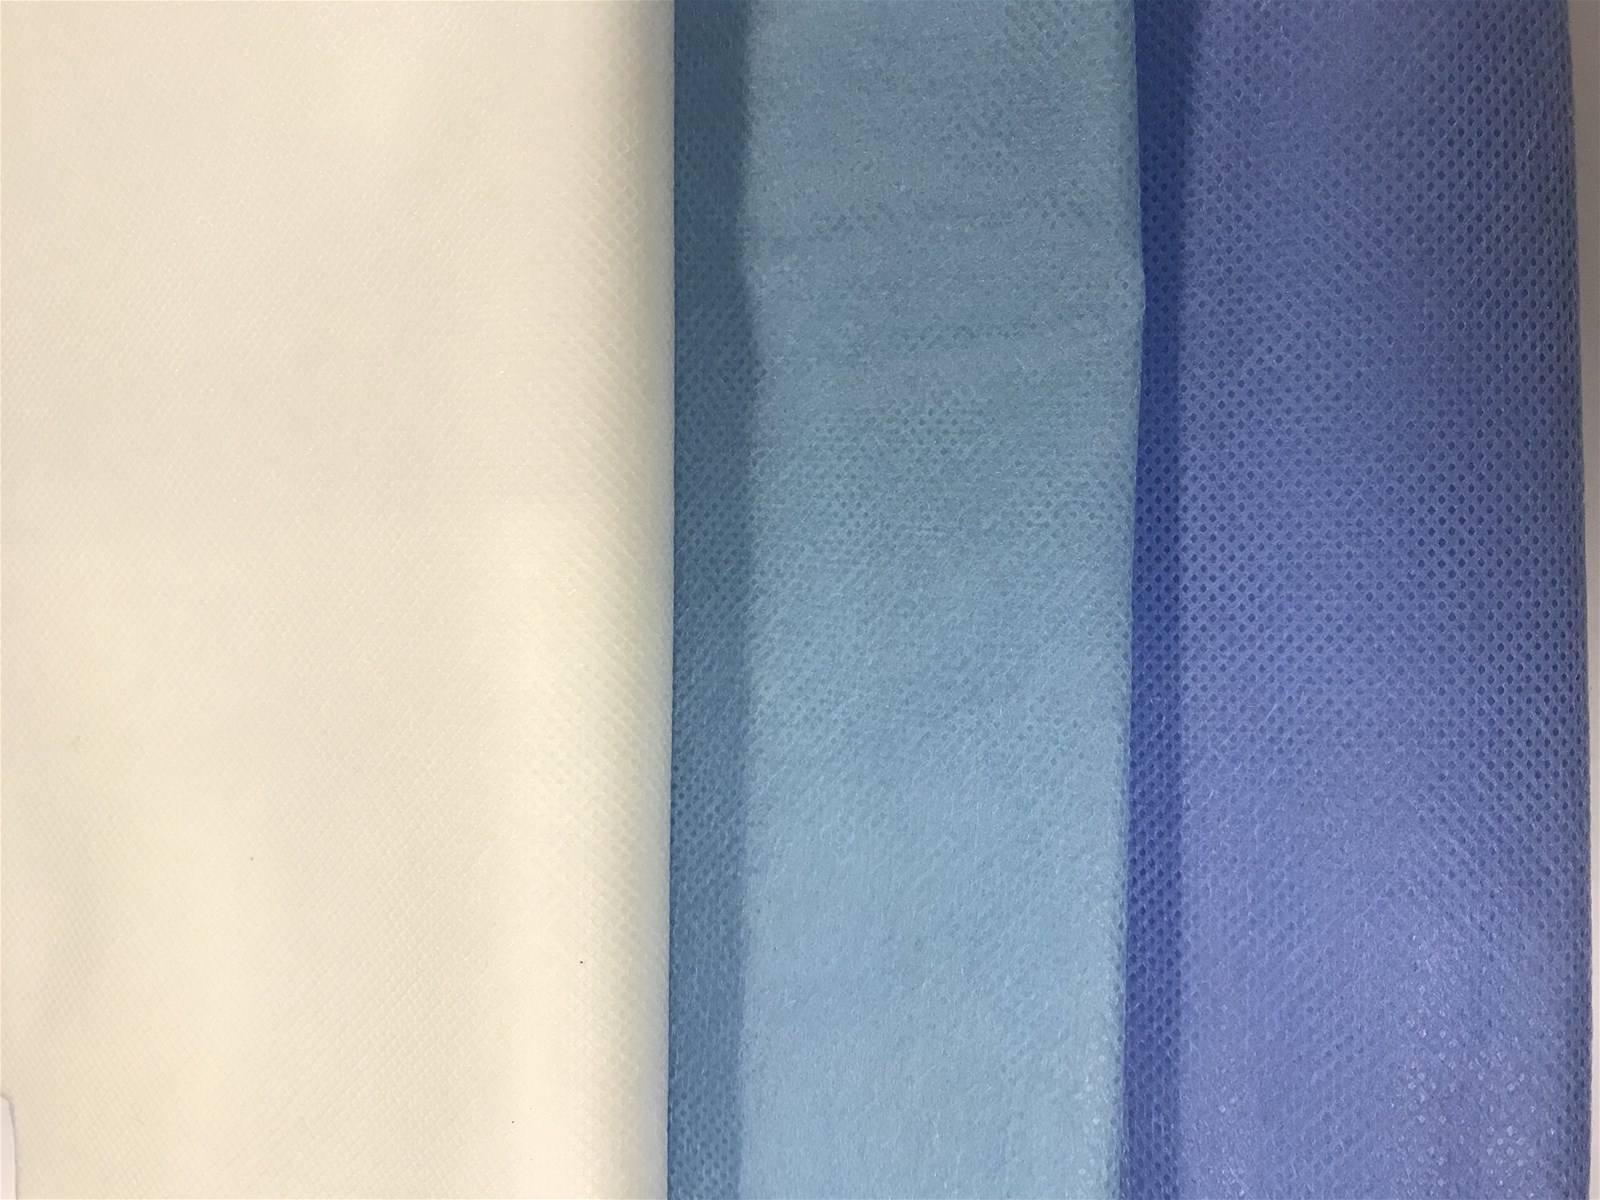 40grLight blue nonwoven fabric